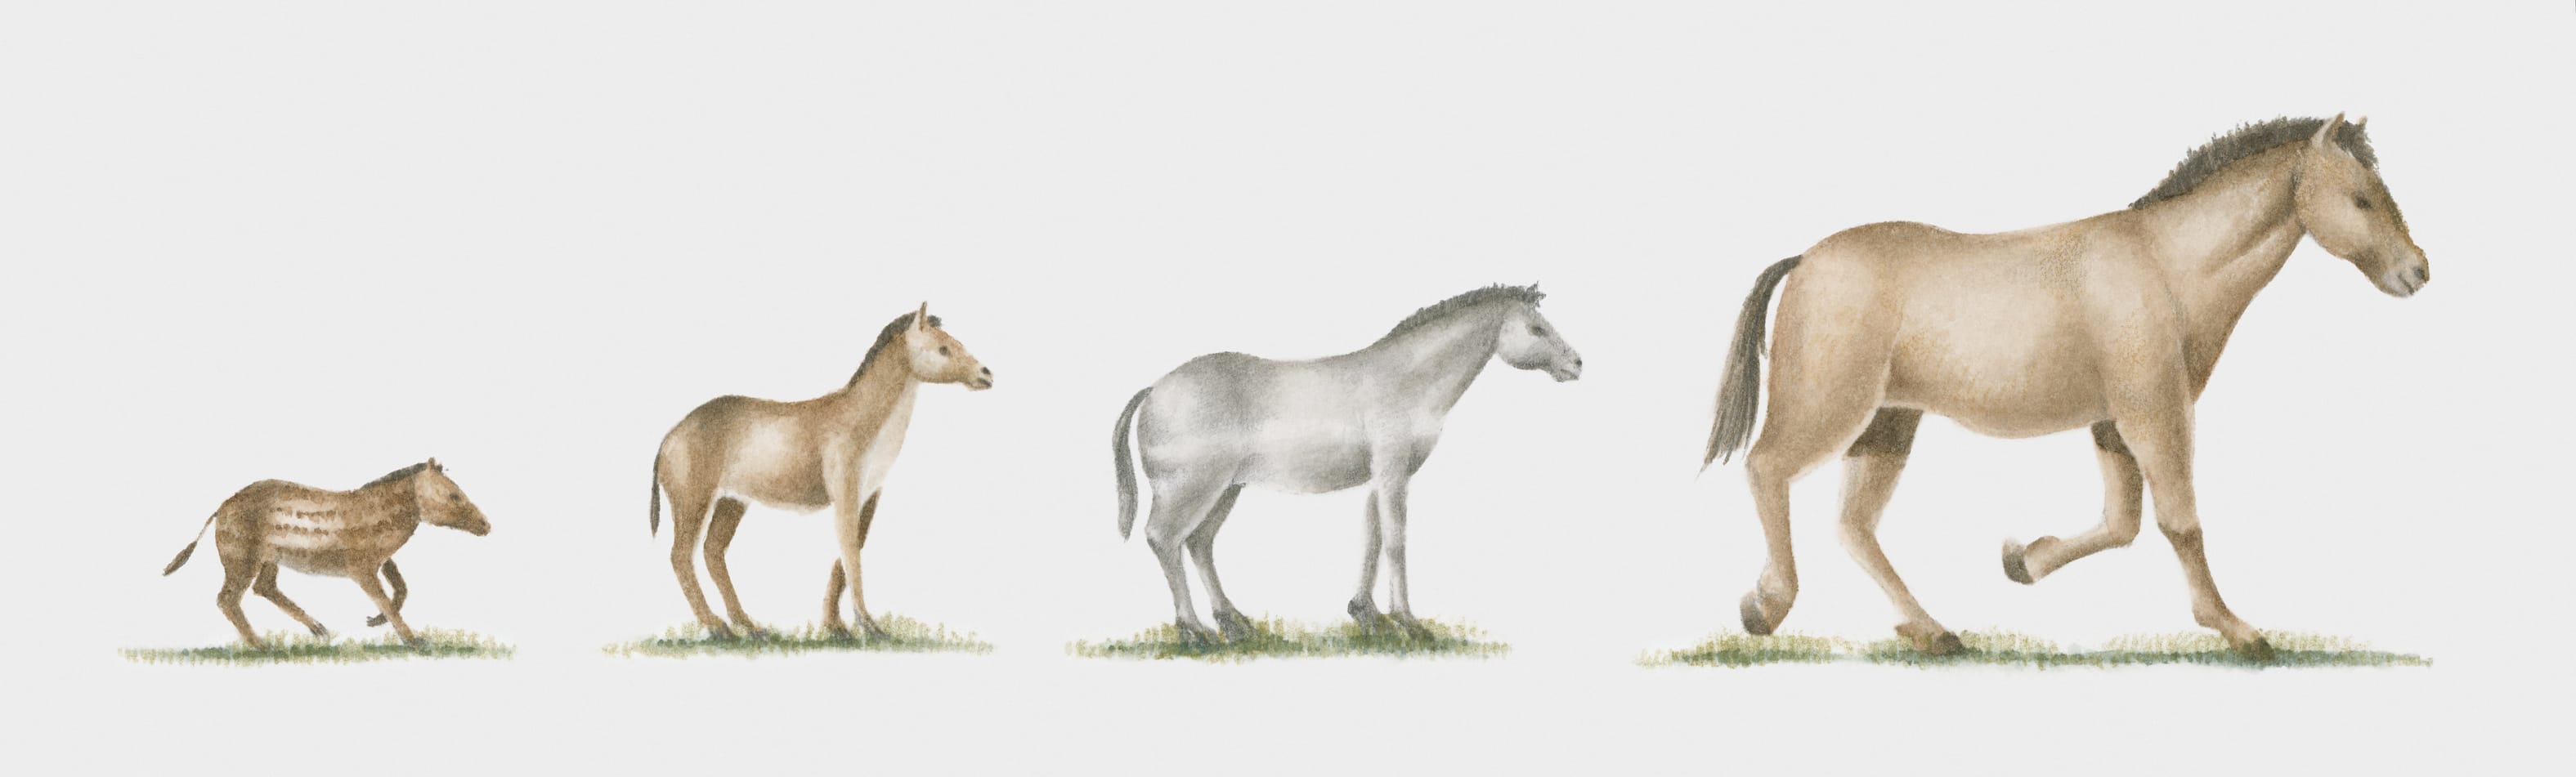 Evolucija konja